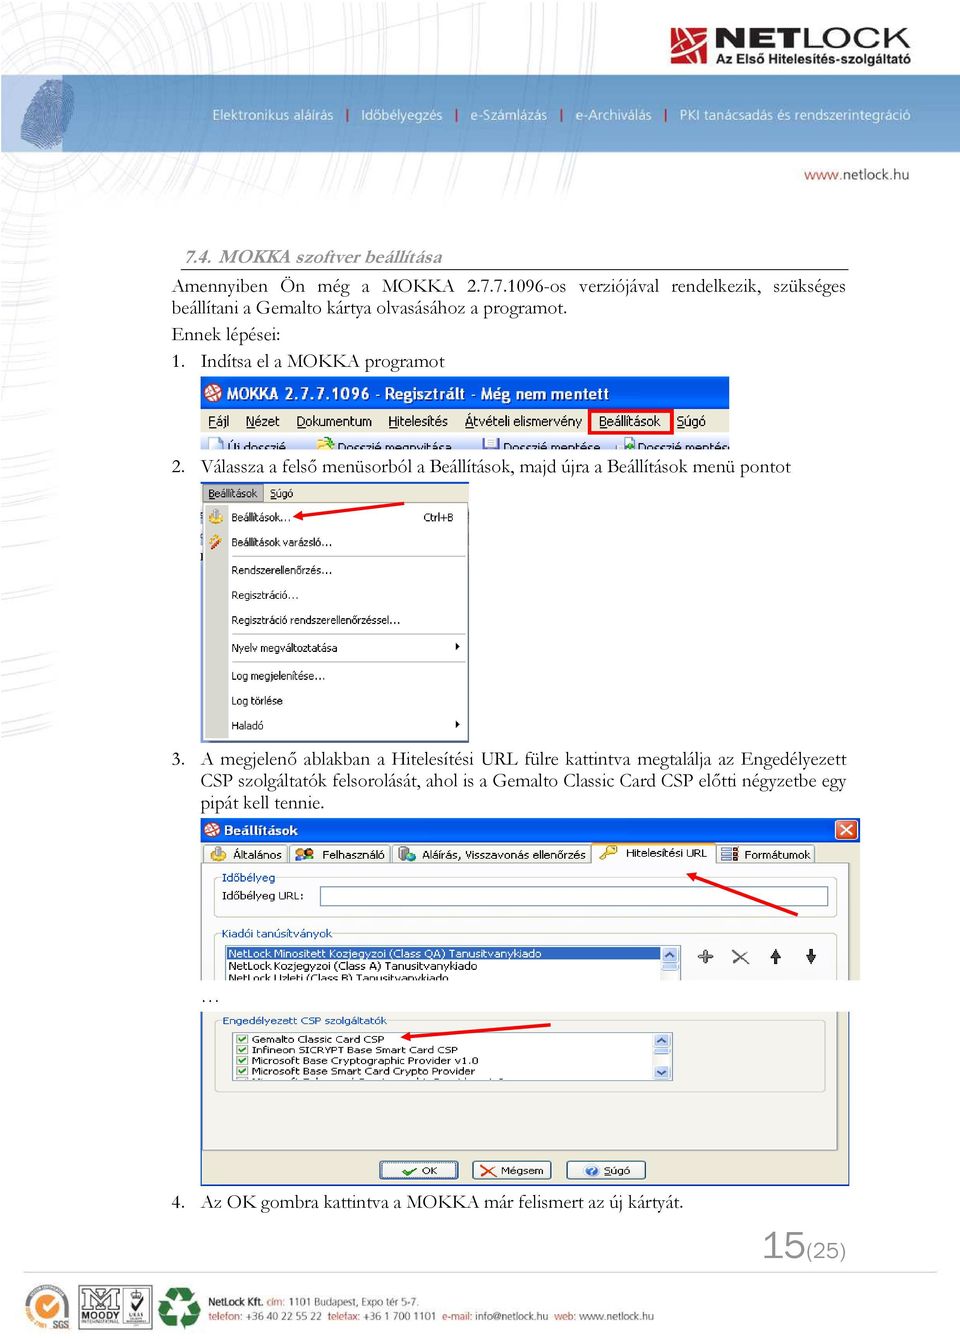 A megjelenő ablakban a Hitelesítési URL fülre kattintva megtalálja az Engedélyezett CSP szolgáltatók felsorolását, ahol is a Gemalto